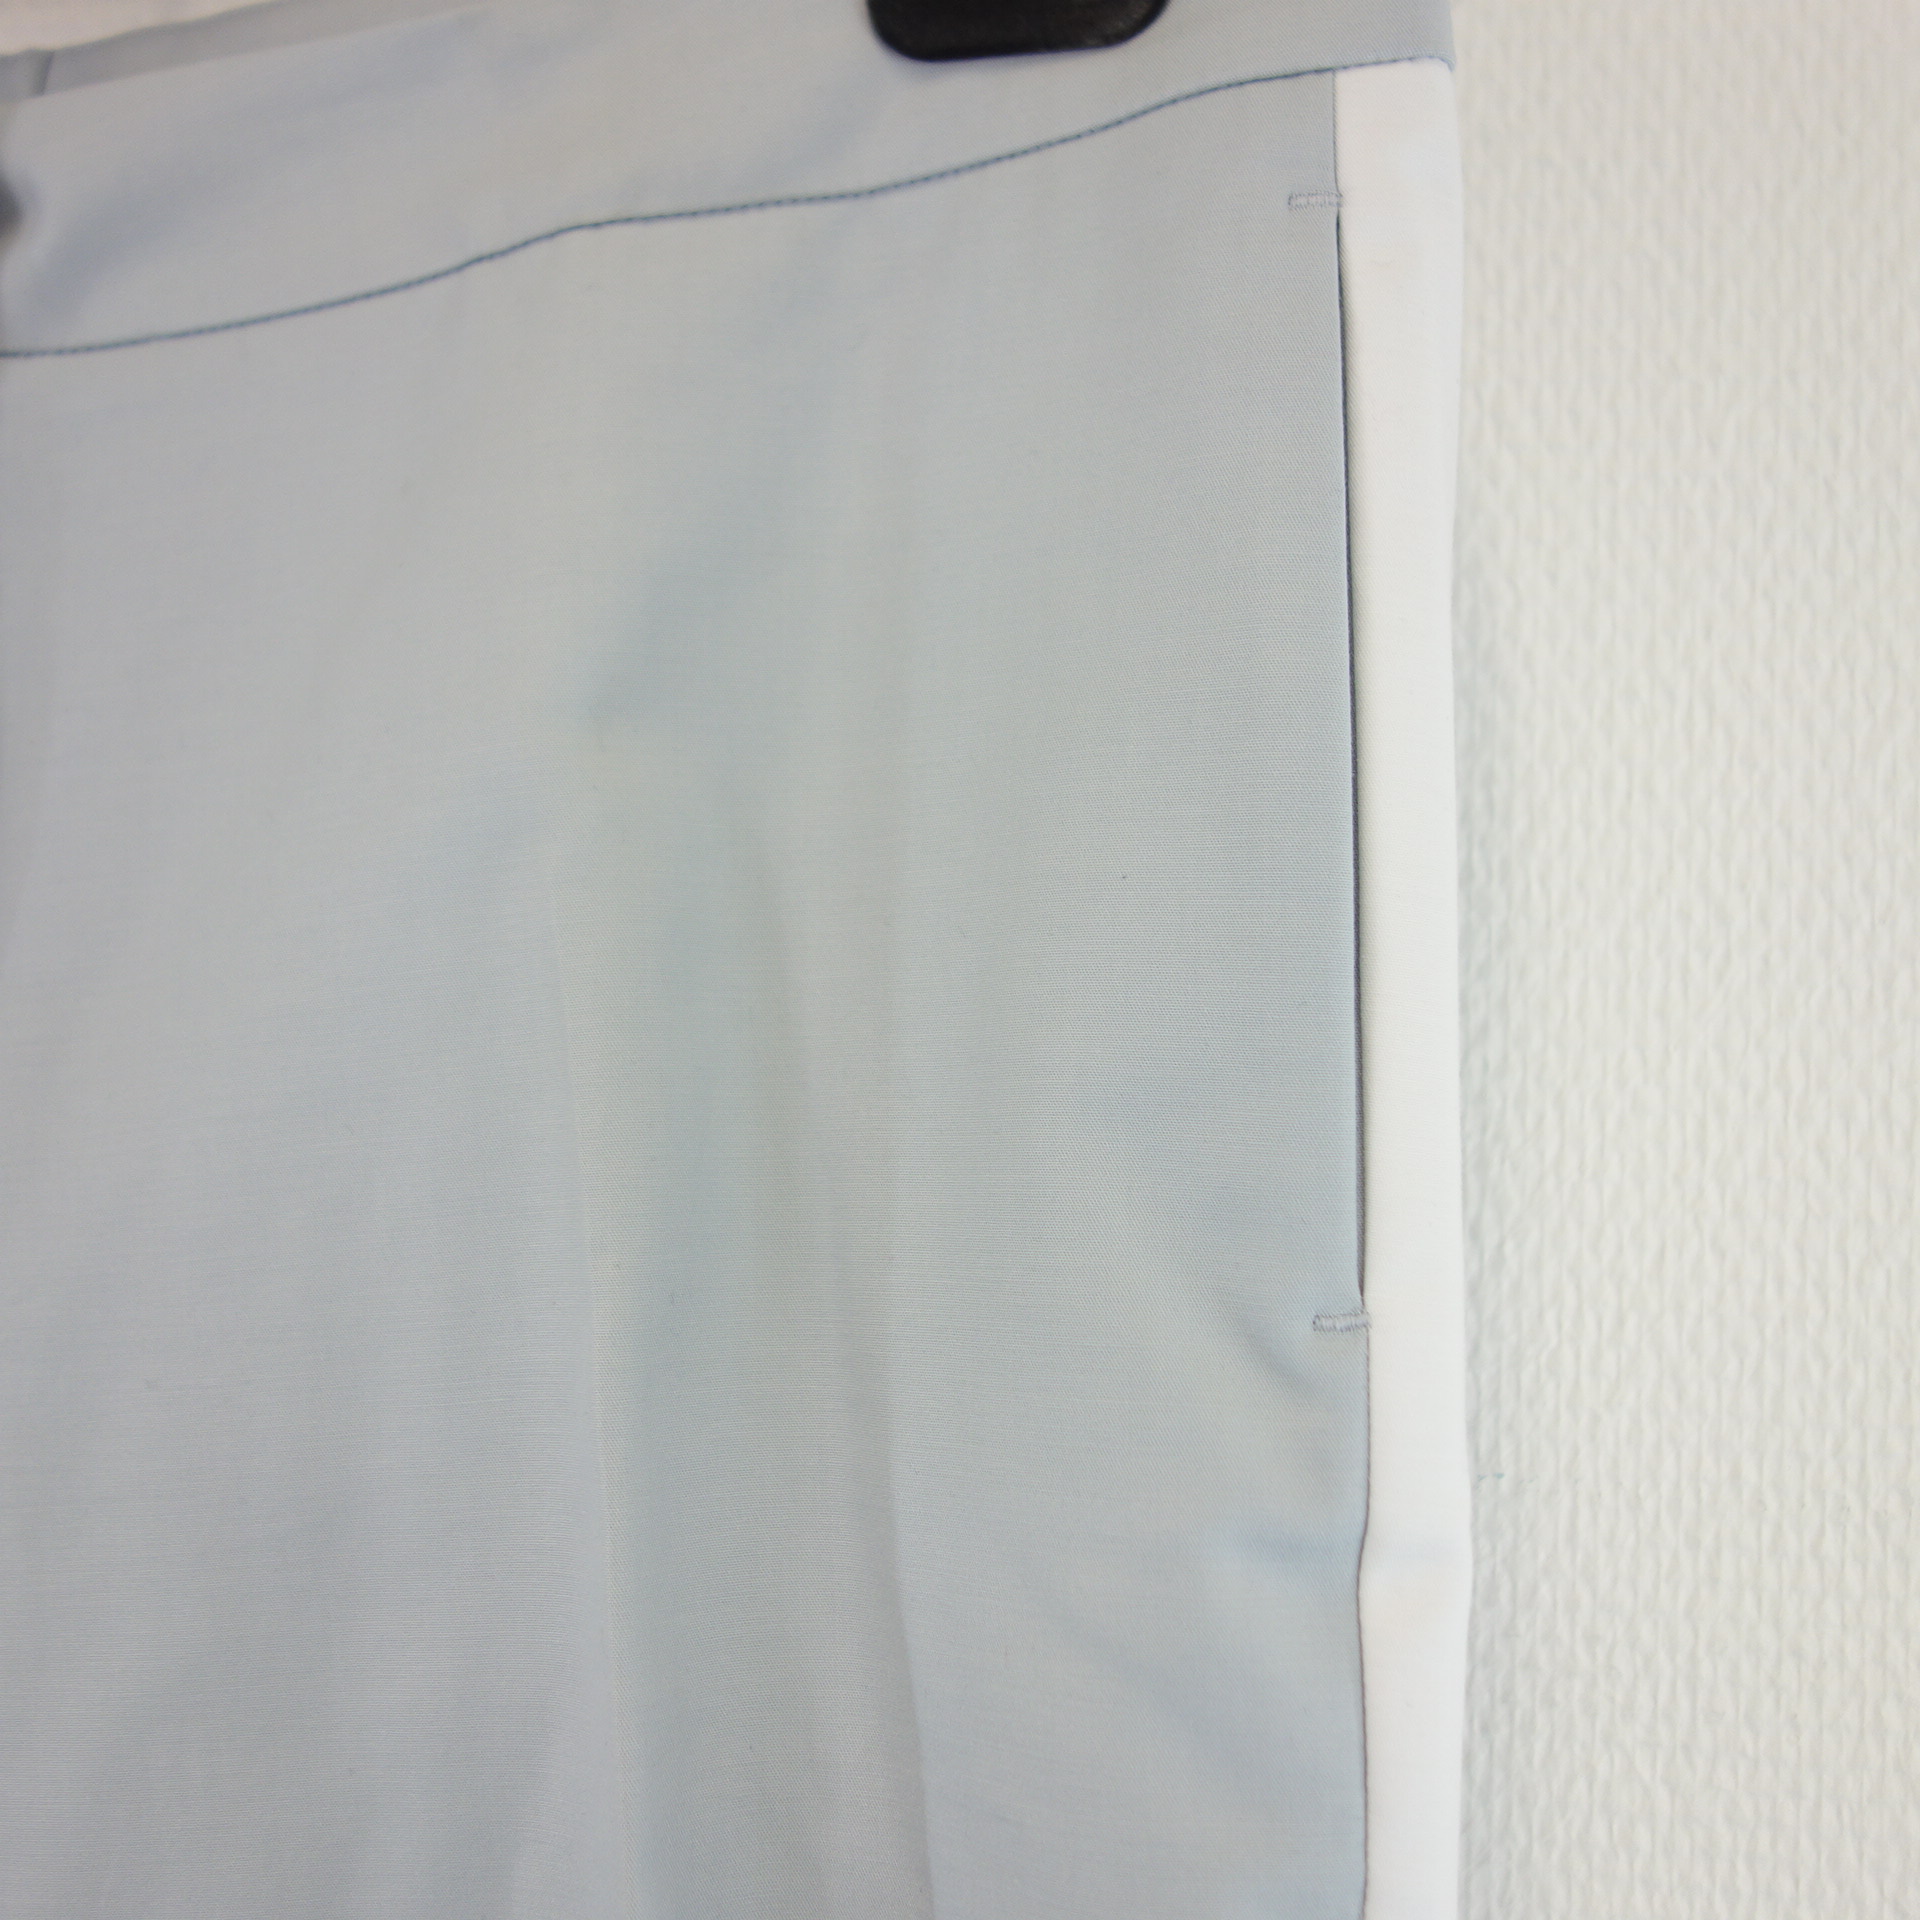 ST EMILE Damen Hosen Stoffhose Modell Ennio Blau Grau Straight Zierstreifen